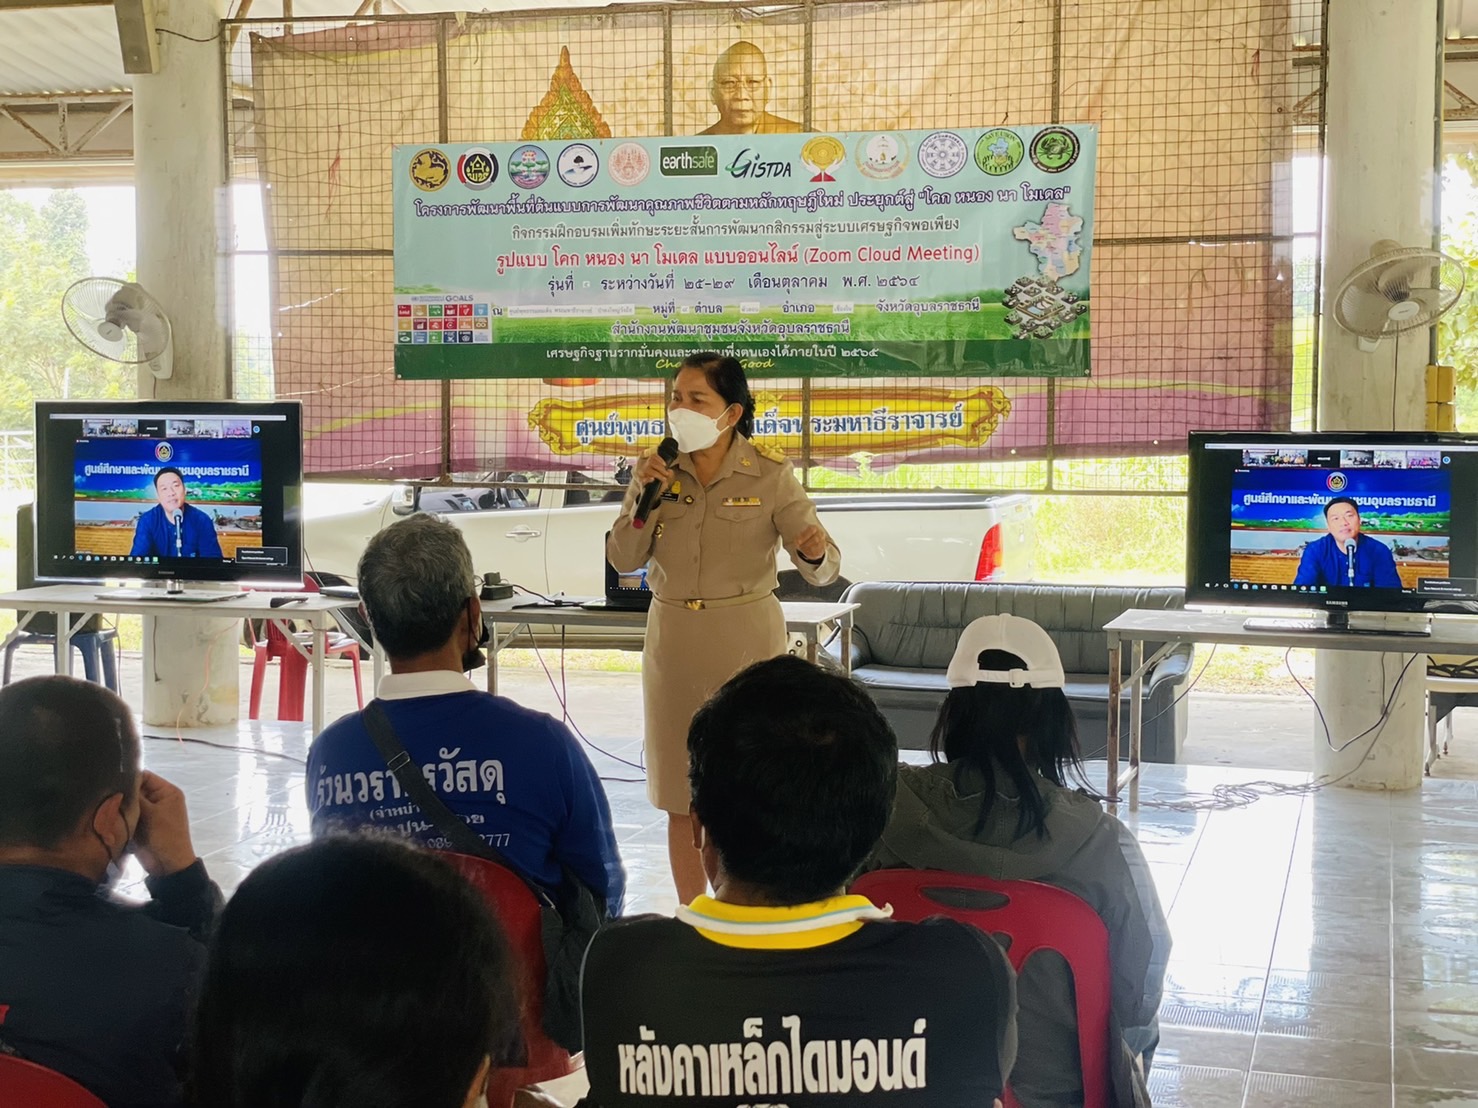 เปิดฉากแล้ว! พช.อุบลฯ ปูพรมจัดฝึกอบรม “โคก หนอง นา พช.”  ผ่านระบบ ZOOM พร้อมกัน 12 จุด เดินหน้าขยายผลโครงการมากที่สุดในประเทศไทย